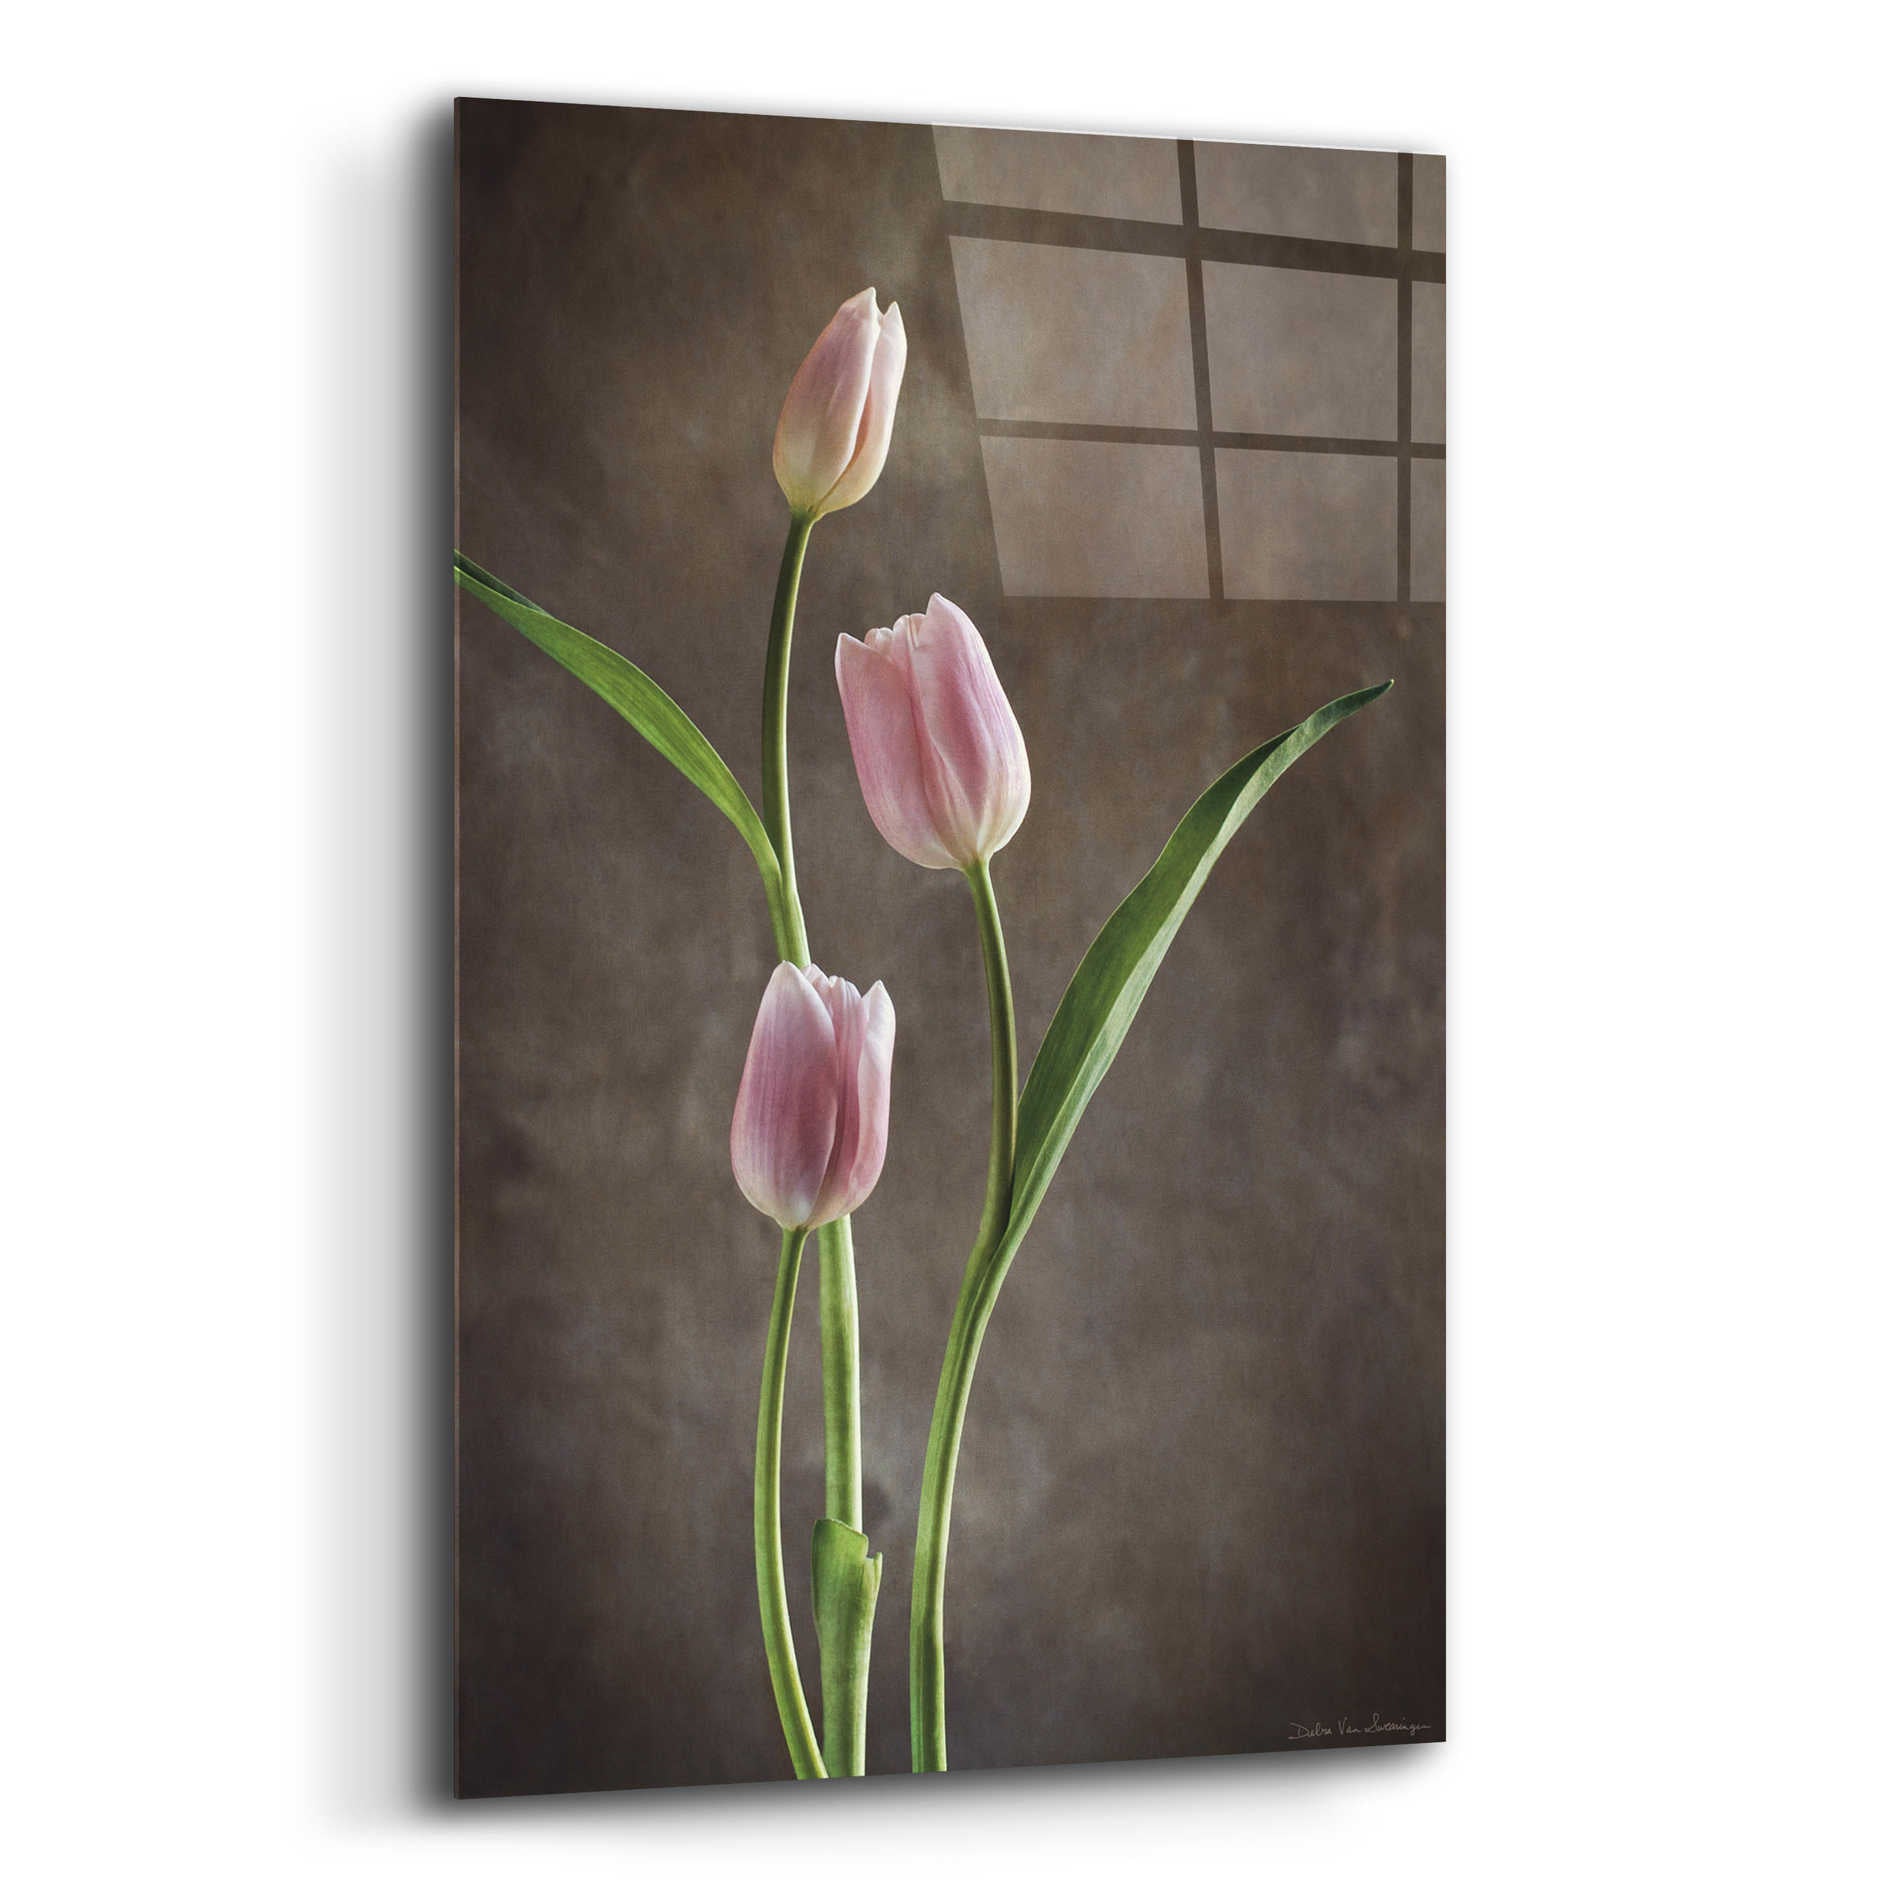 Epic Art 'Spring Tulips VIII' by Debra Van Swearingen, Acrylic Glass Wall Art,16x24